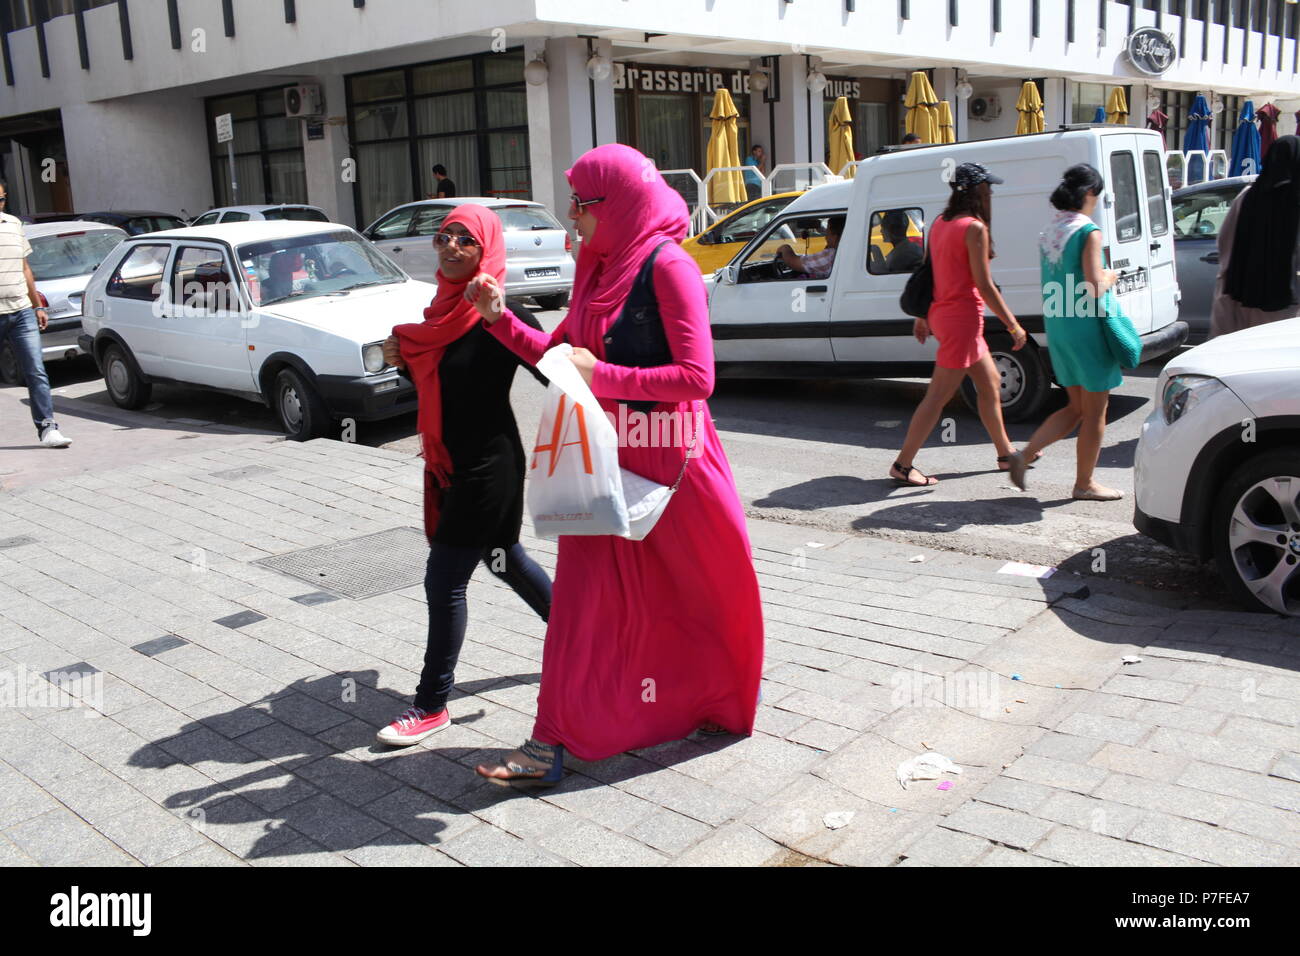 Tourisme moderne de jour en pays arabe, à Tunis, Tunisie, deux dames en arabe musulmane rose marchent en arrière-plan alors que deux dames sont étrangers Banque D'Images